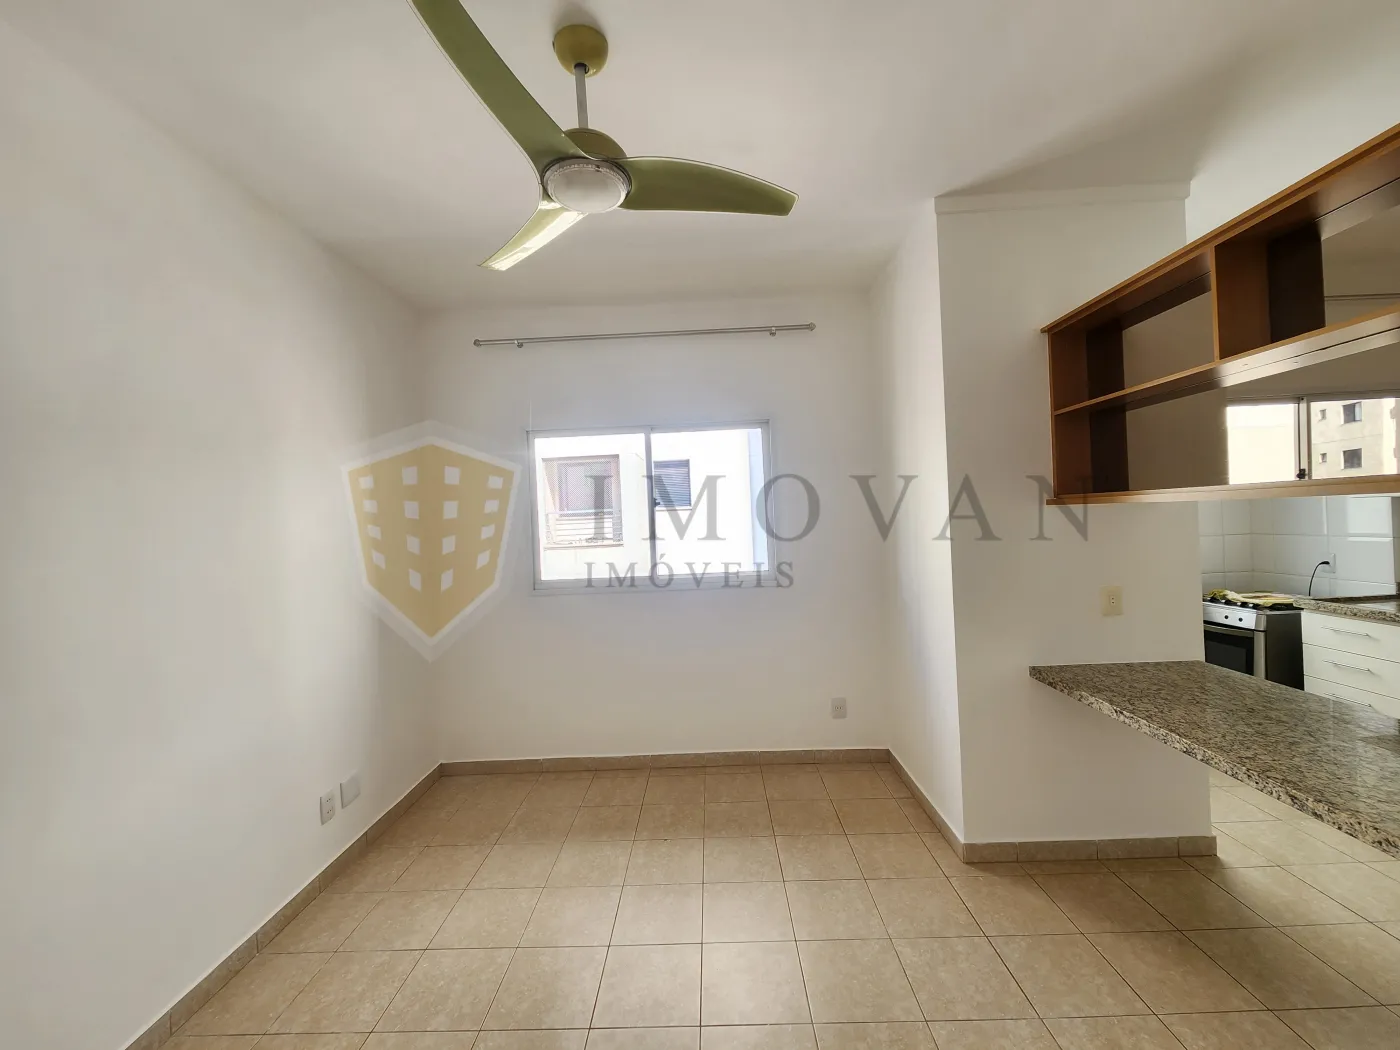 Comprar Apartamento / Padrão em Ribeirão Preto R$ 230.000,00 - Foto 7